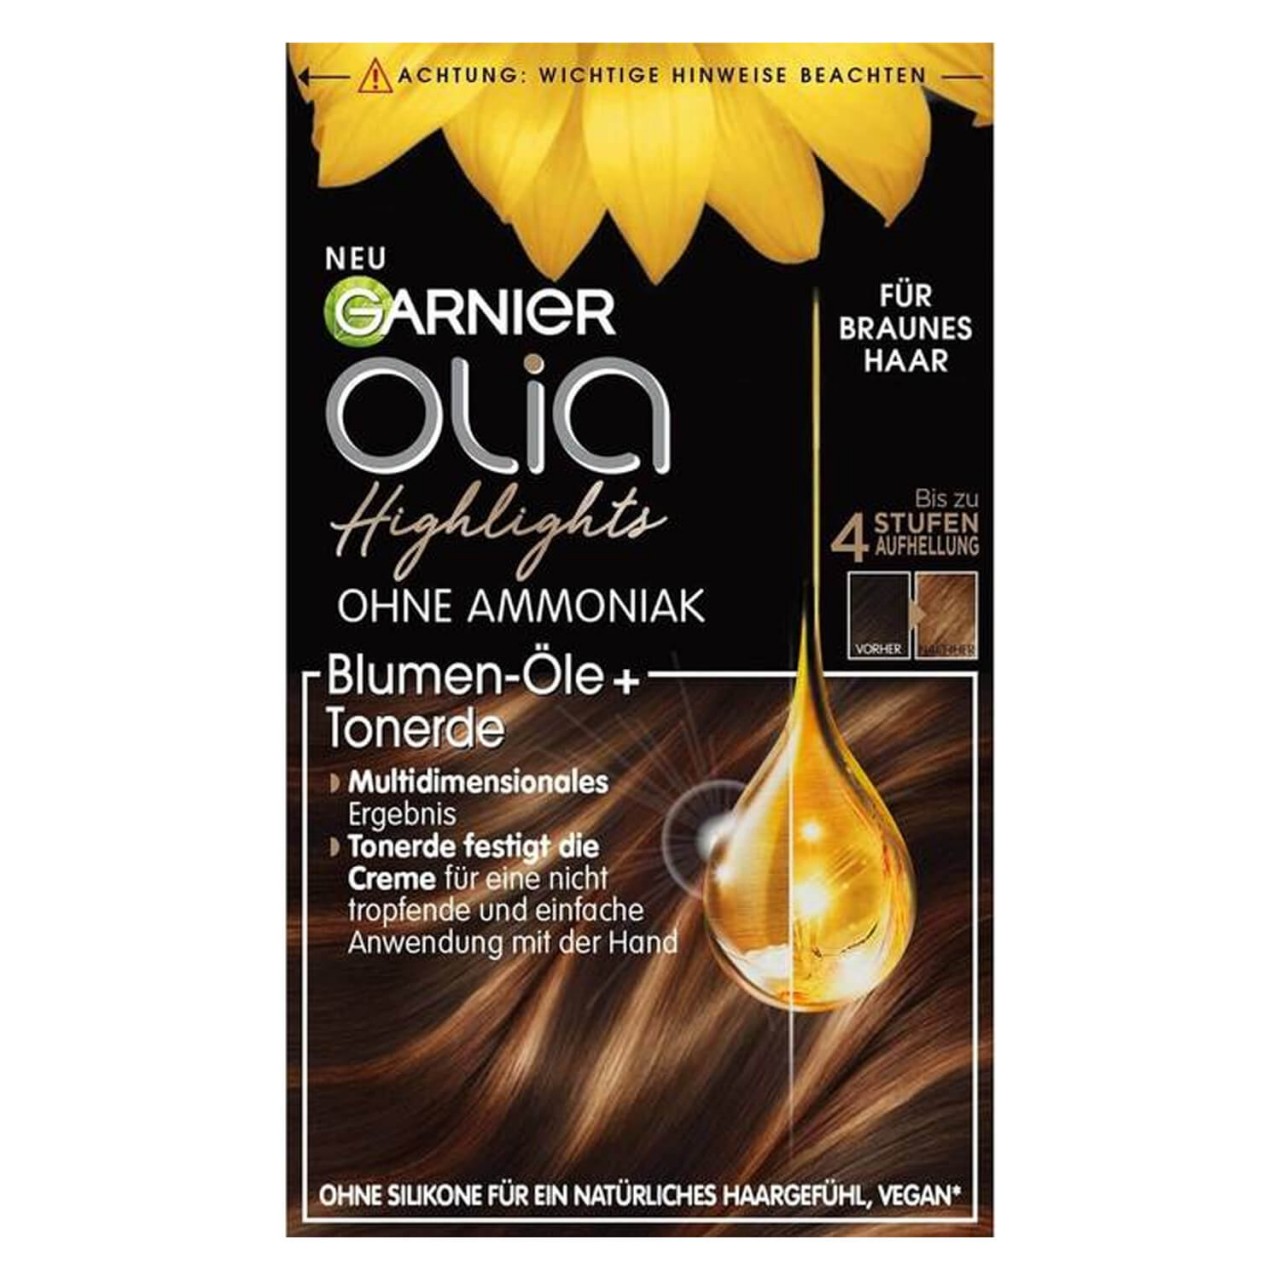 Olia - Highlights für braunes Haar von GARNIER